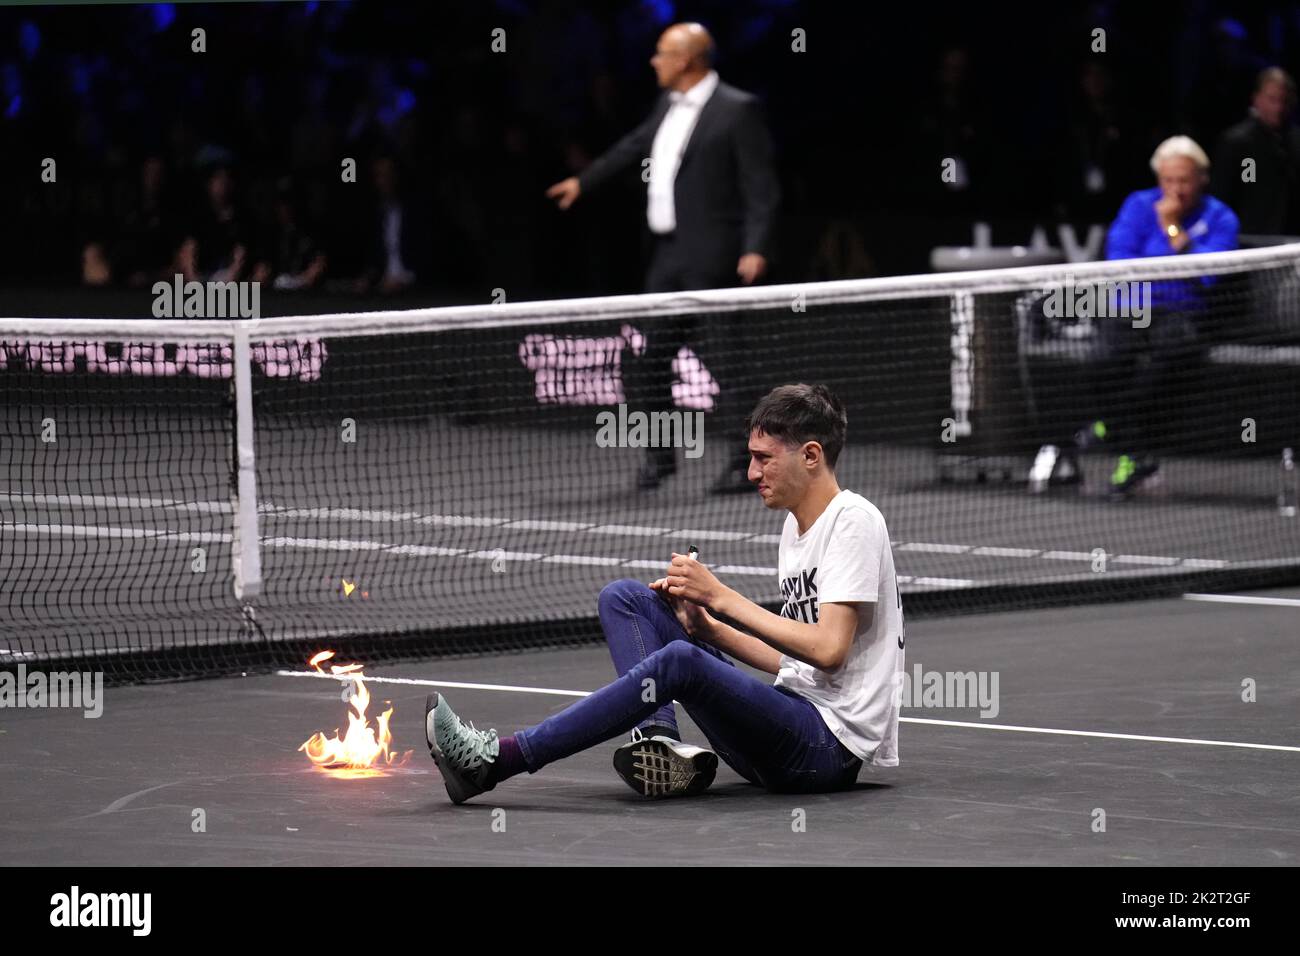 Un protester accende un incendio in campo il primo giorno della Laver Cup alla O2 Arena, Londra. Data immagine: Venerdì 23 settembre 2022. Foto Stock